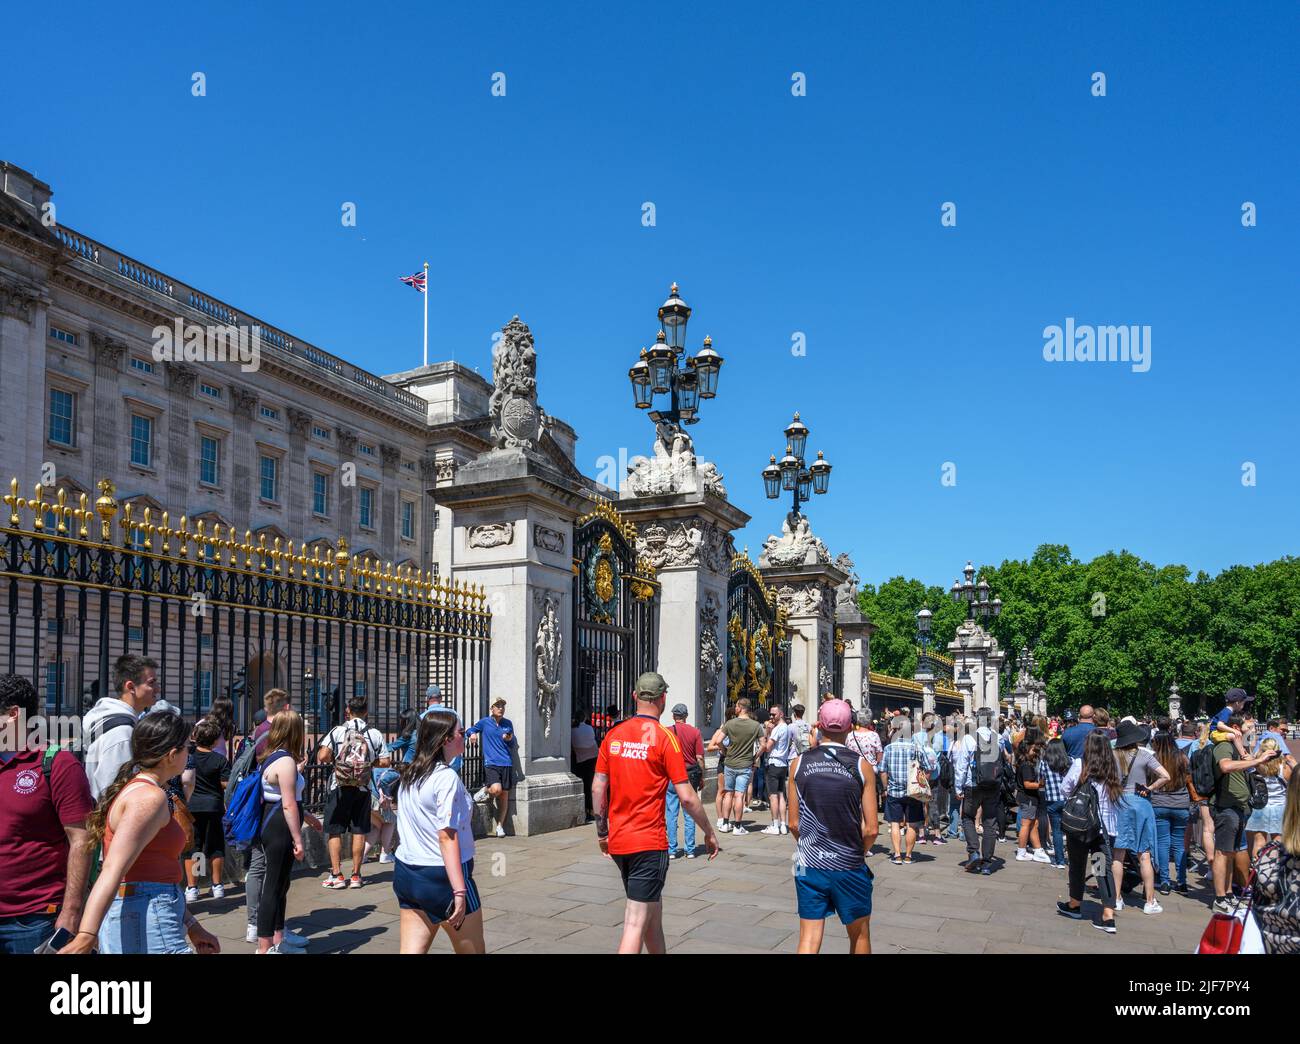 Des foules de touristes qui surveillent la relève de la garde à Buckingham Palace, Londres, Angleterre, Royaume-Uni Banque D'Images